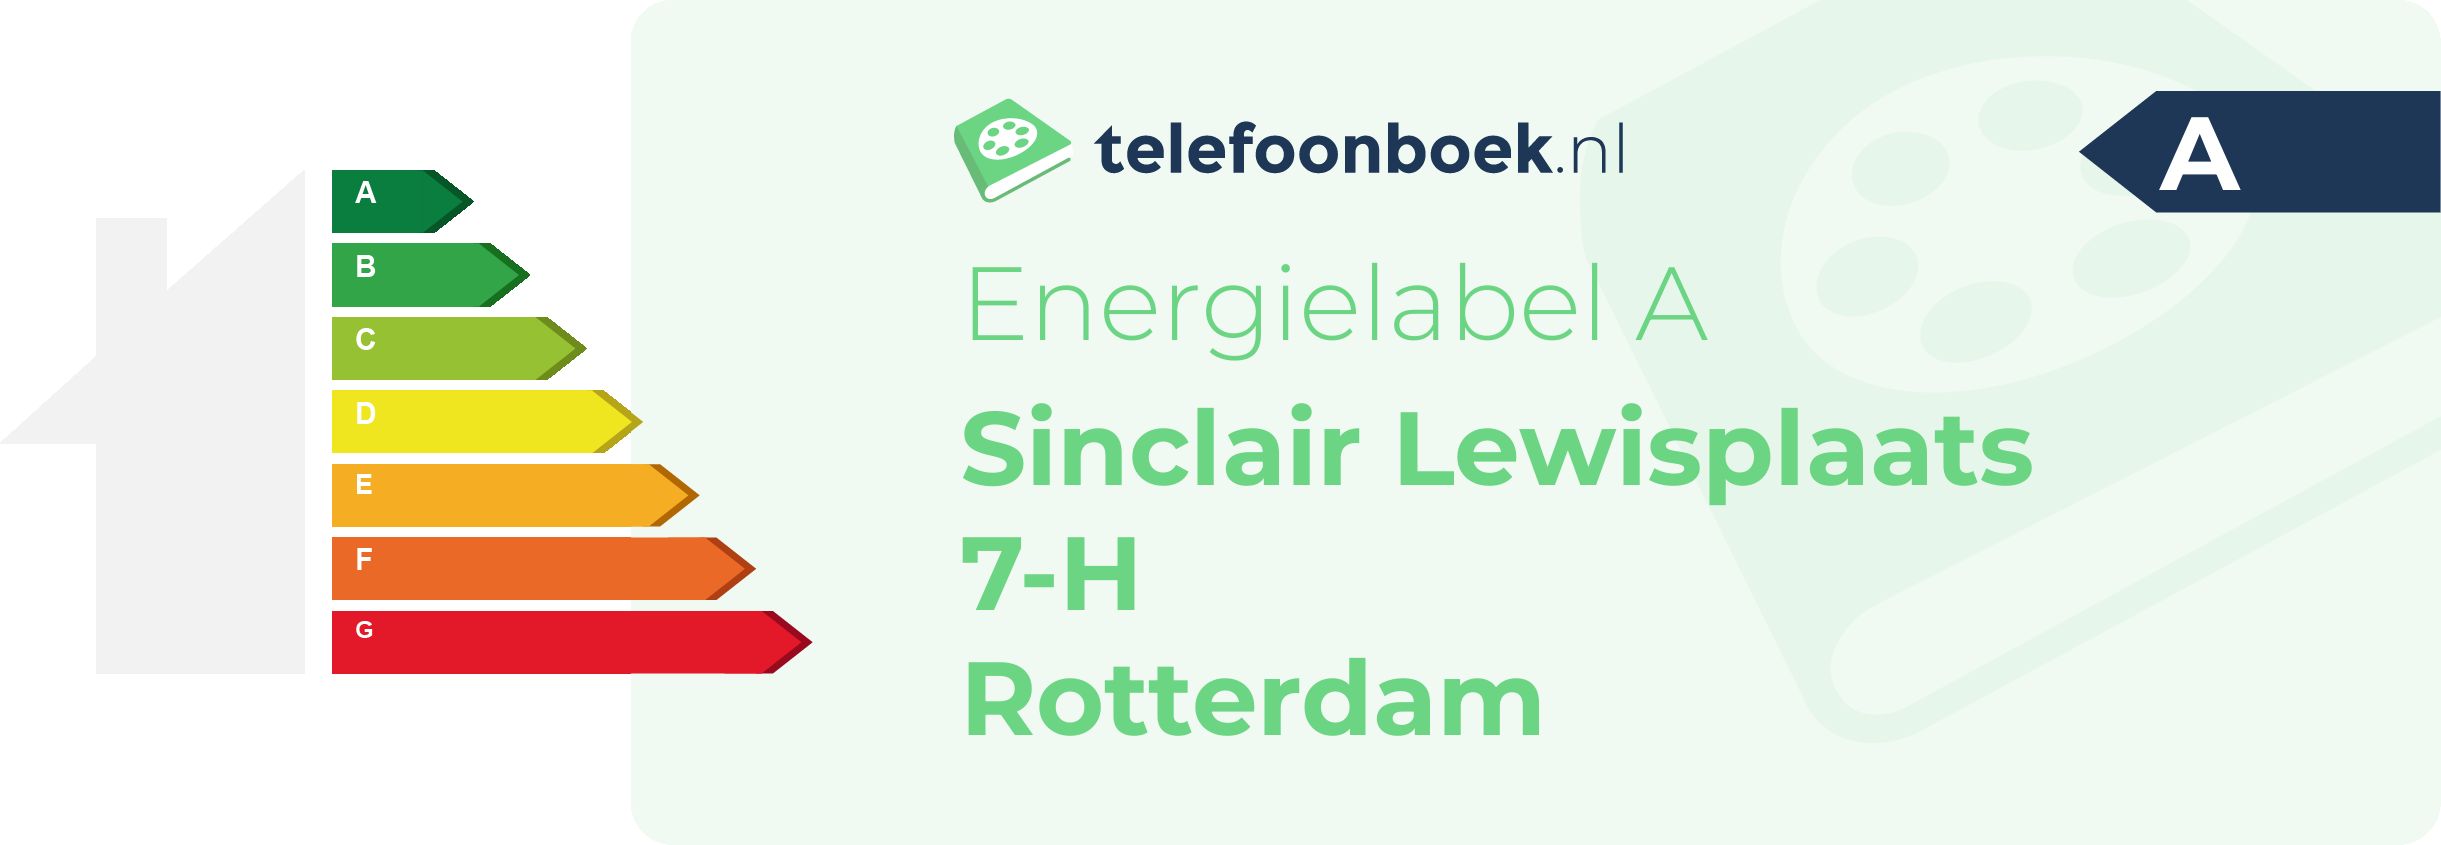 Energielabel Sinclair Lewisplaats 7-H Rotterdam